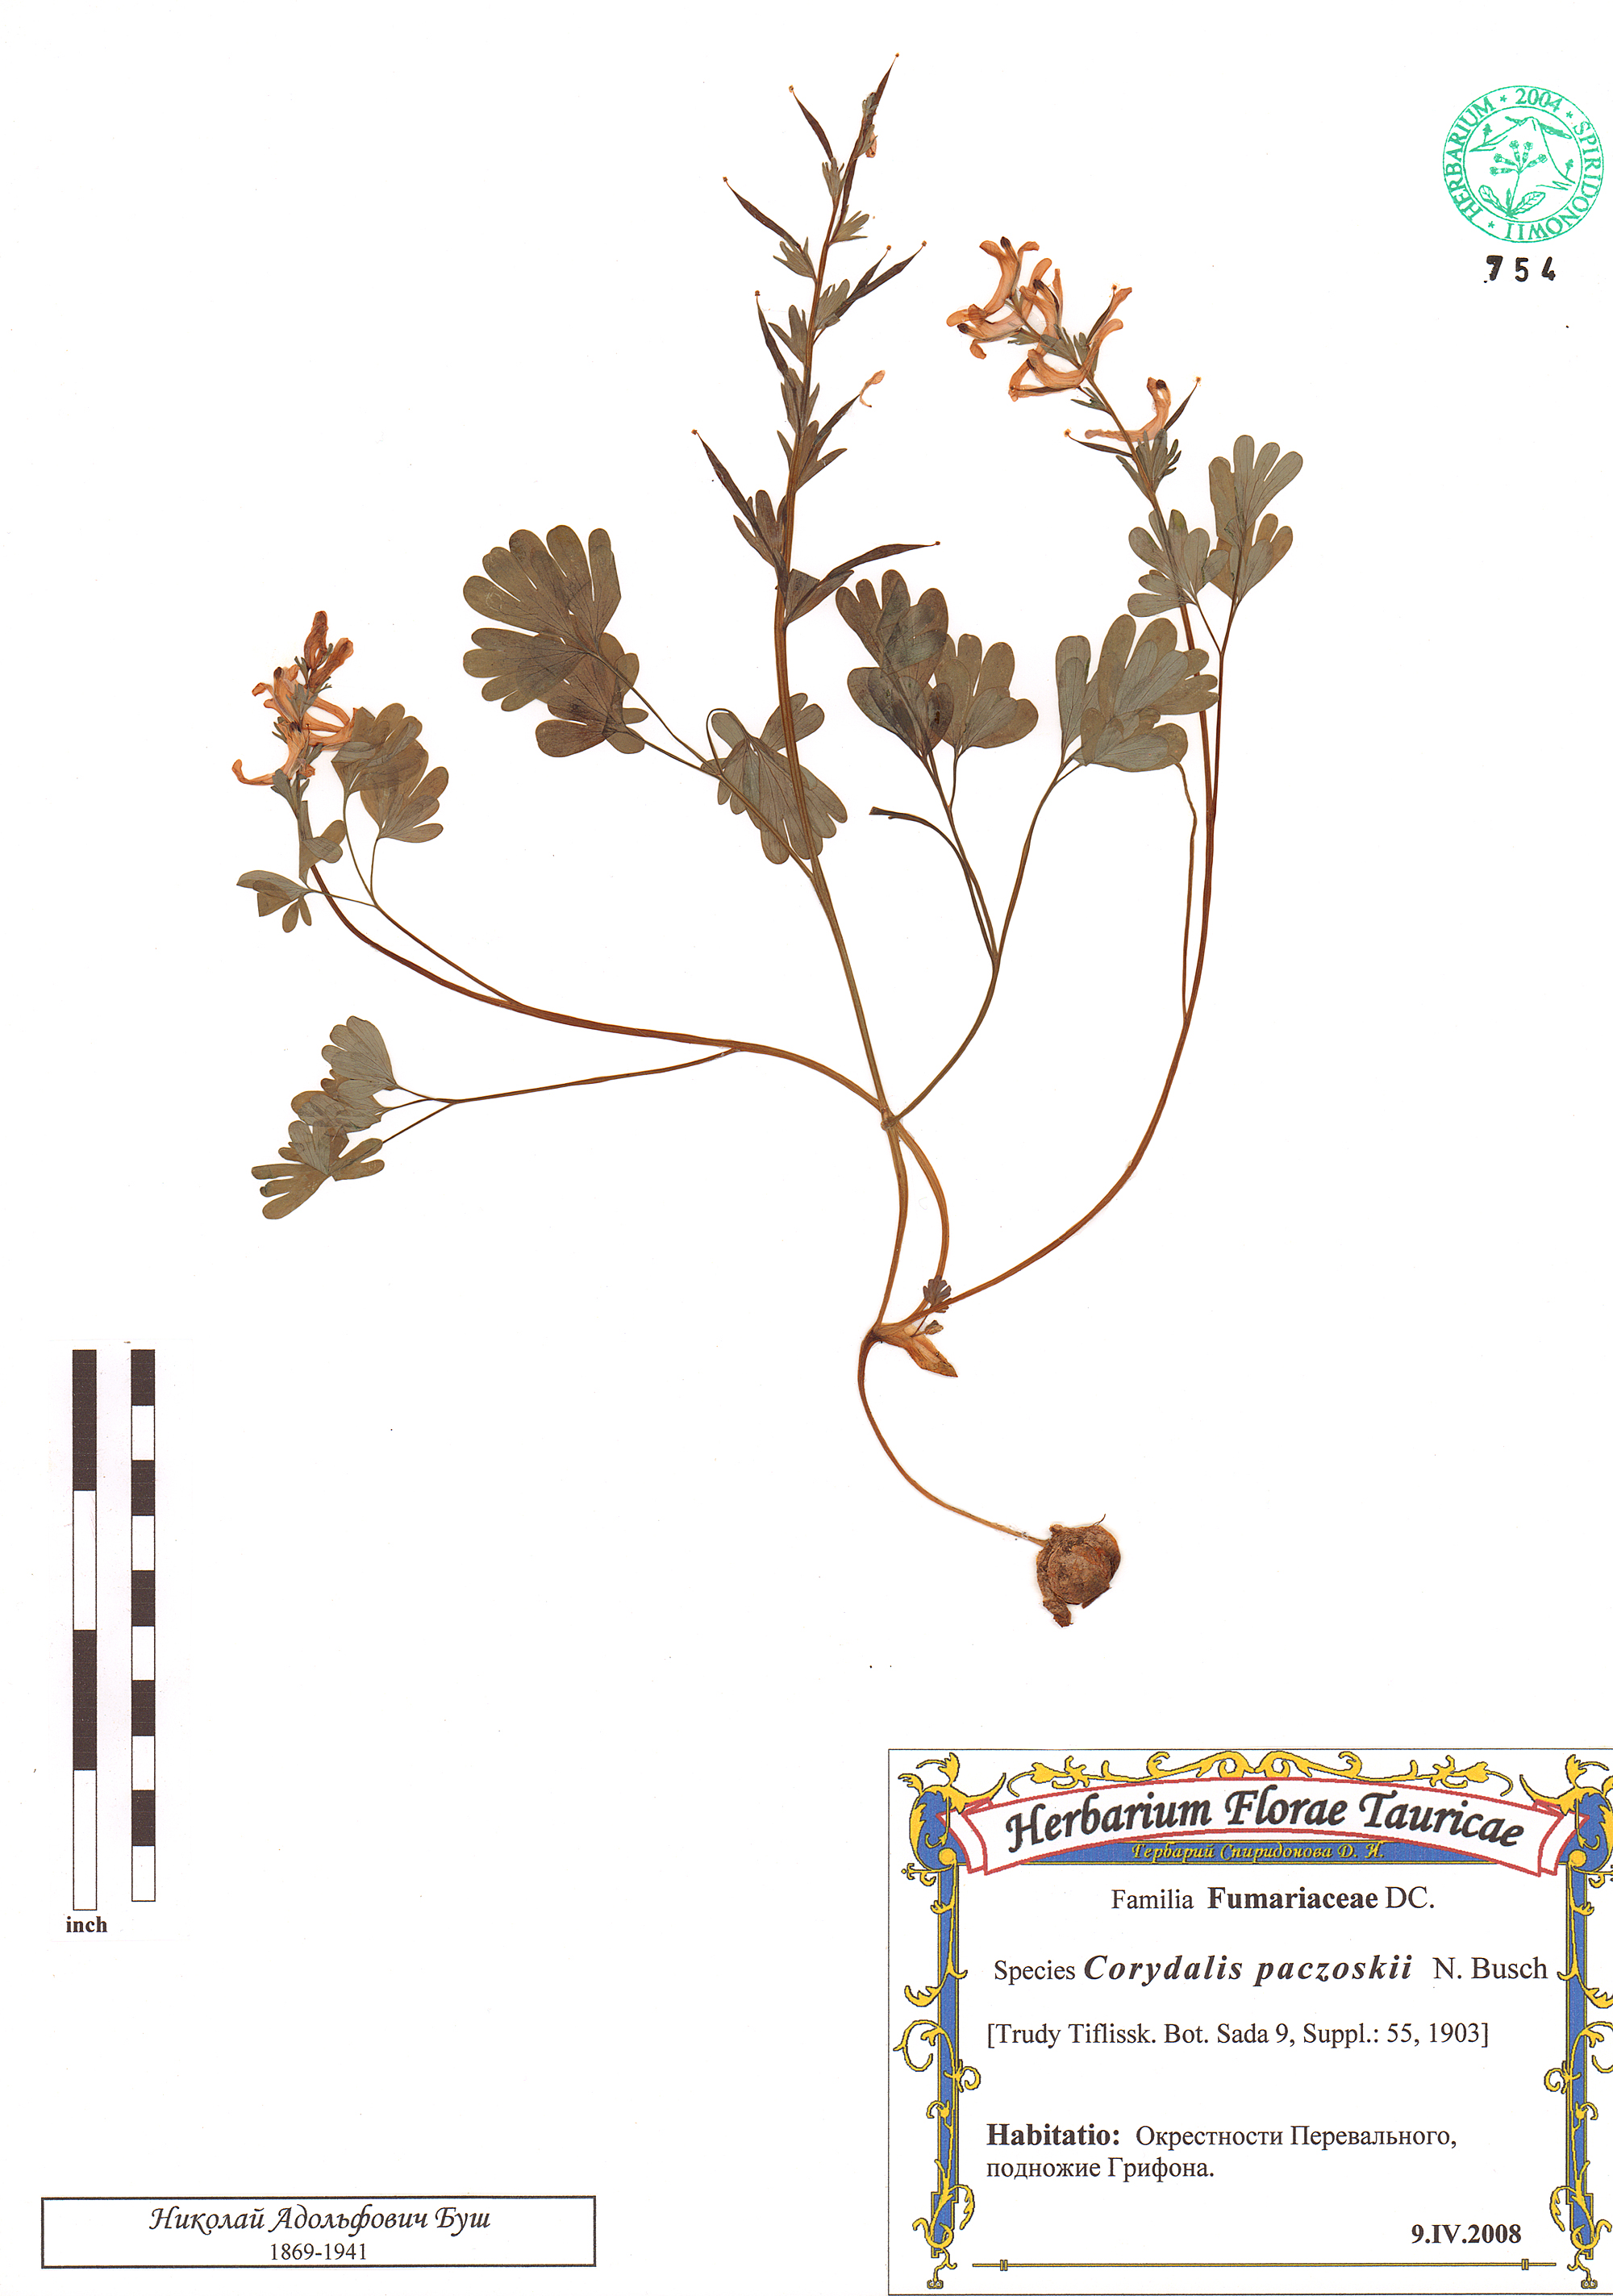 Corydalis paczoskii N. Busch